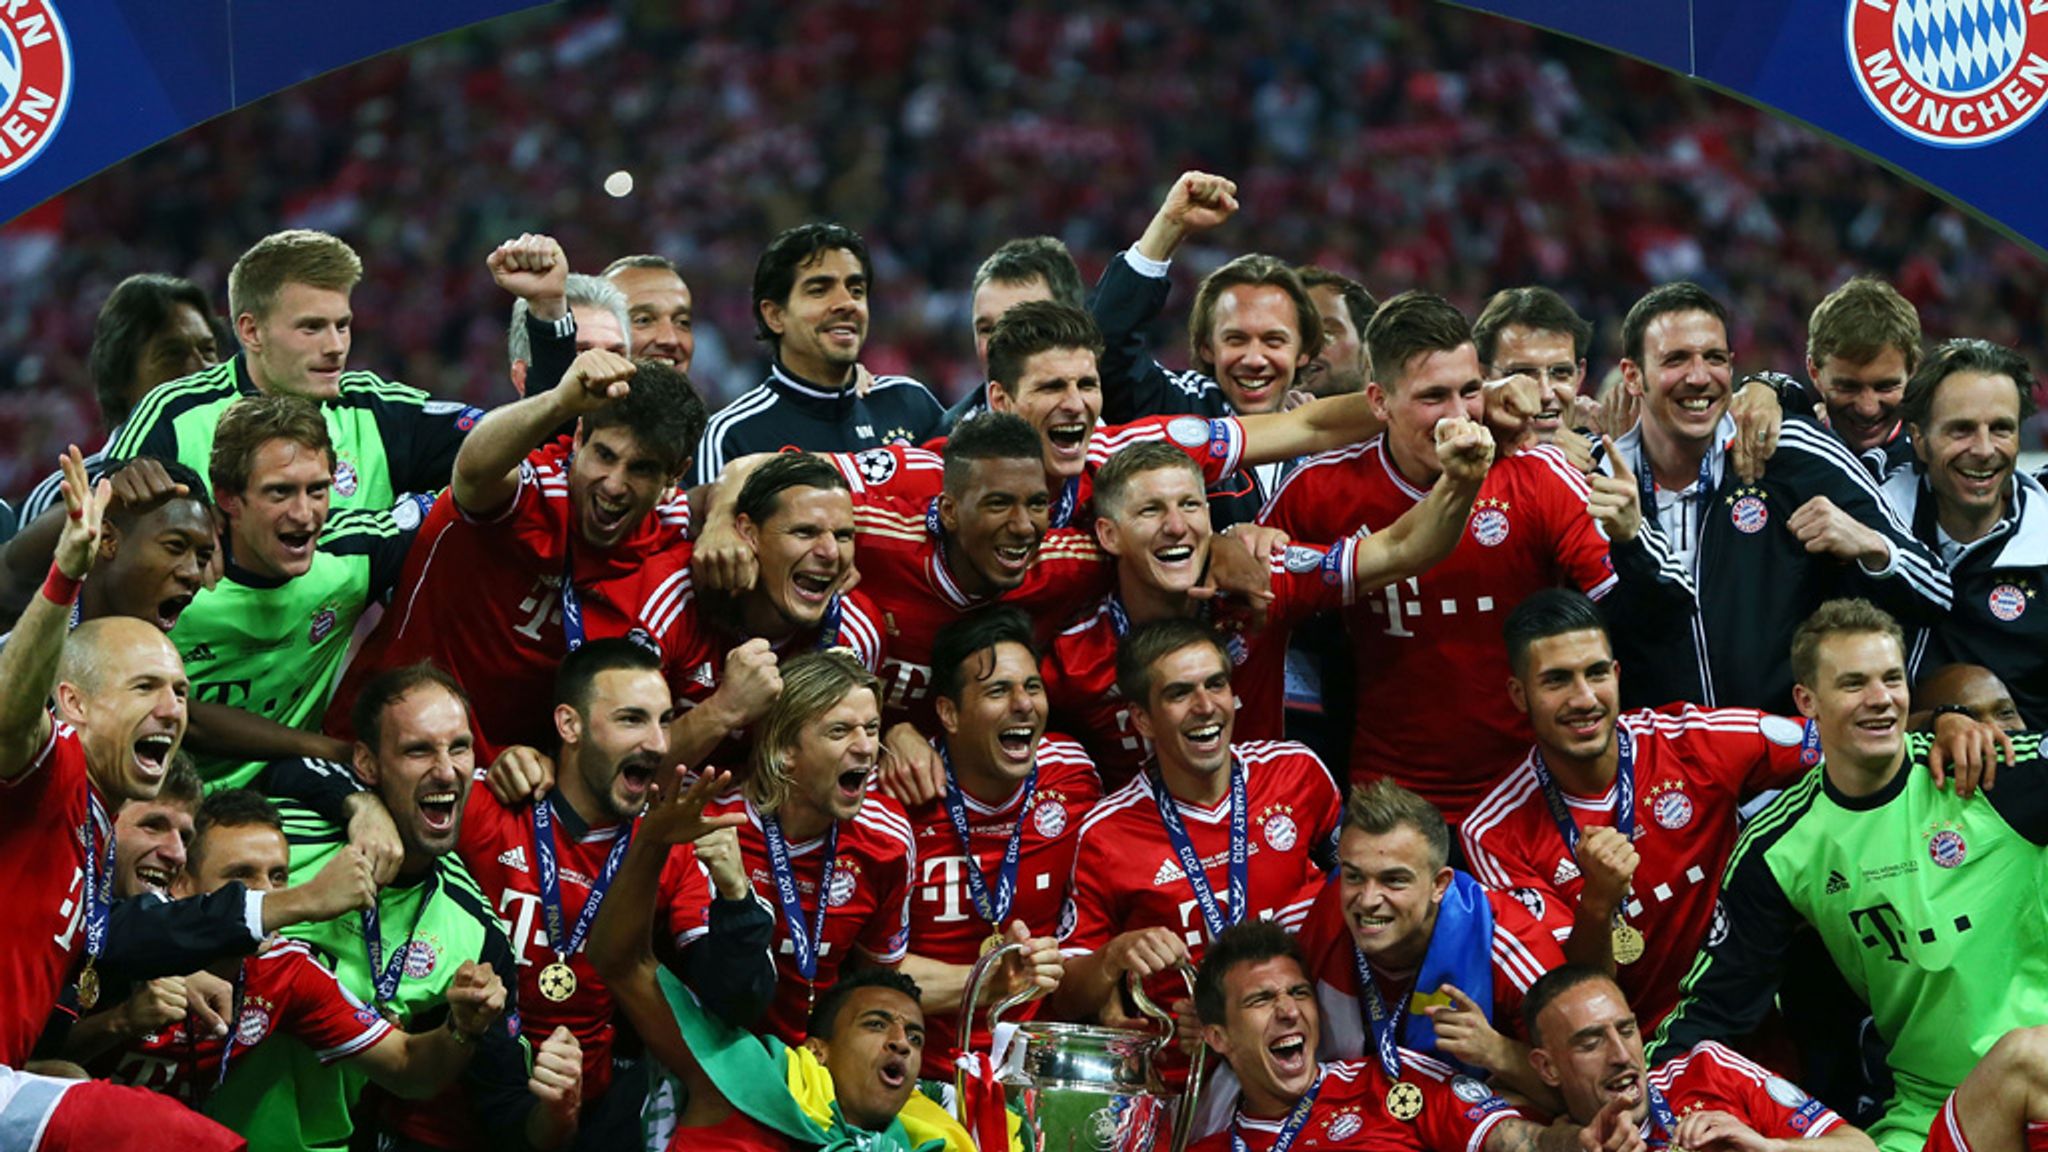 Champions League Final Mats Hummels Salutes Bayern Munich After Wembley Win Football News Sky Sports